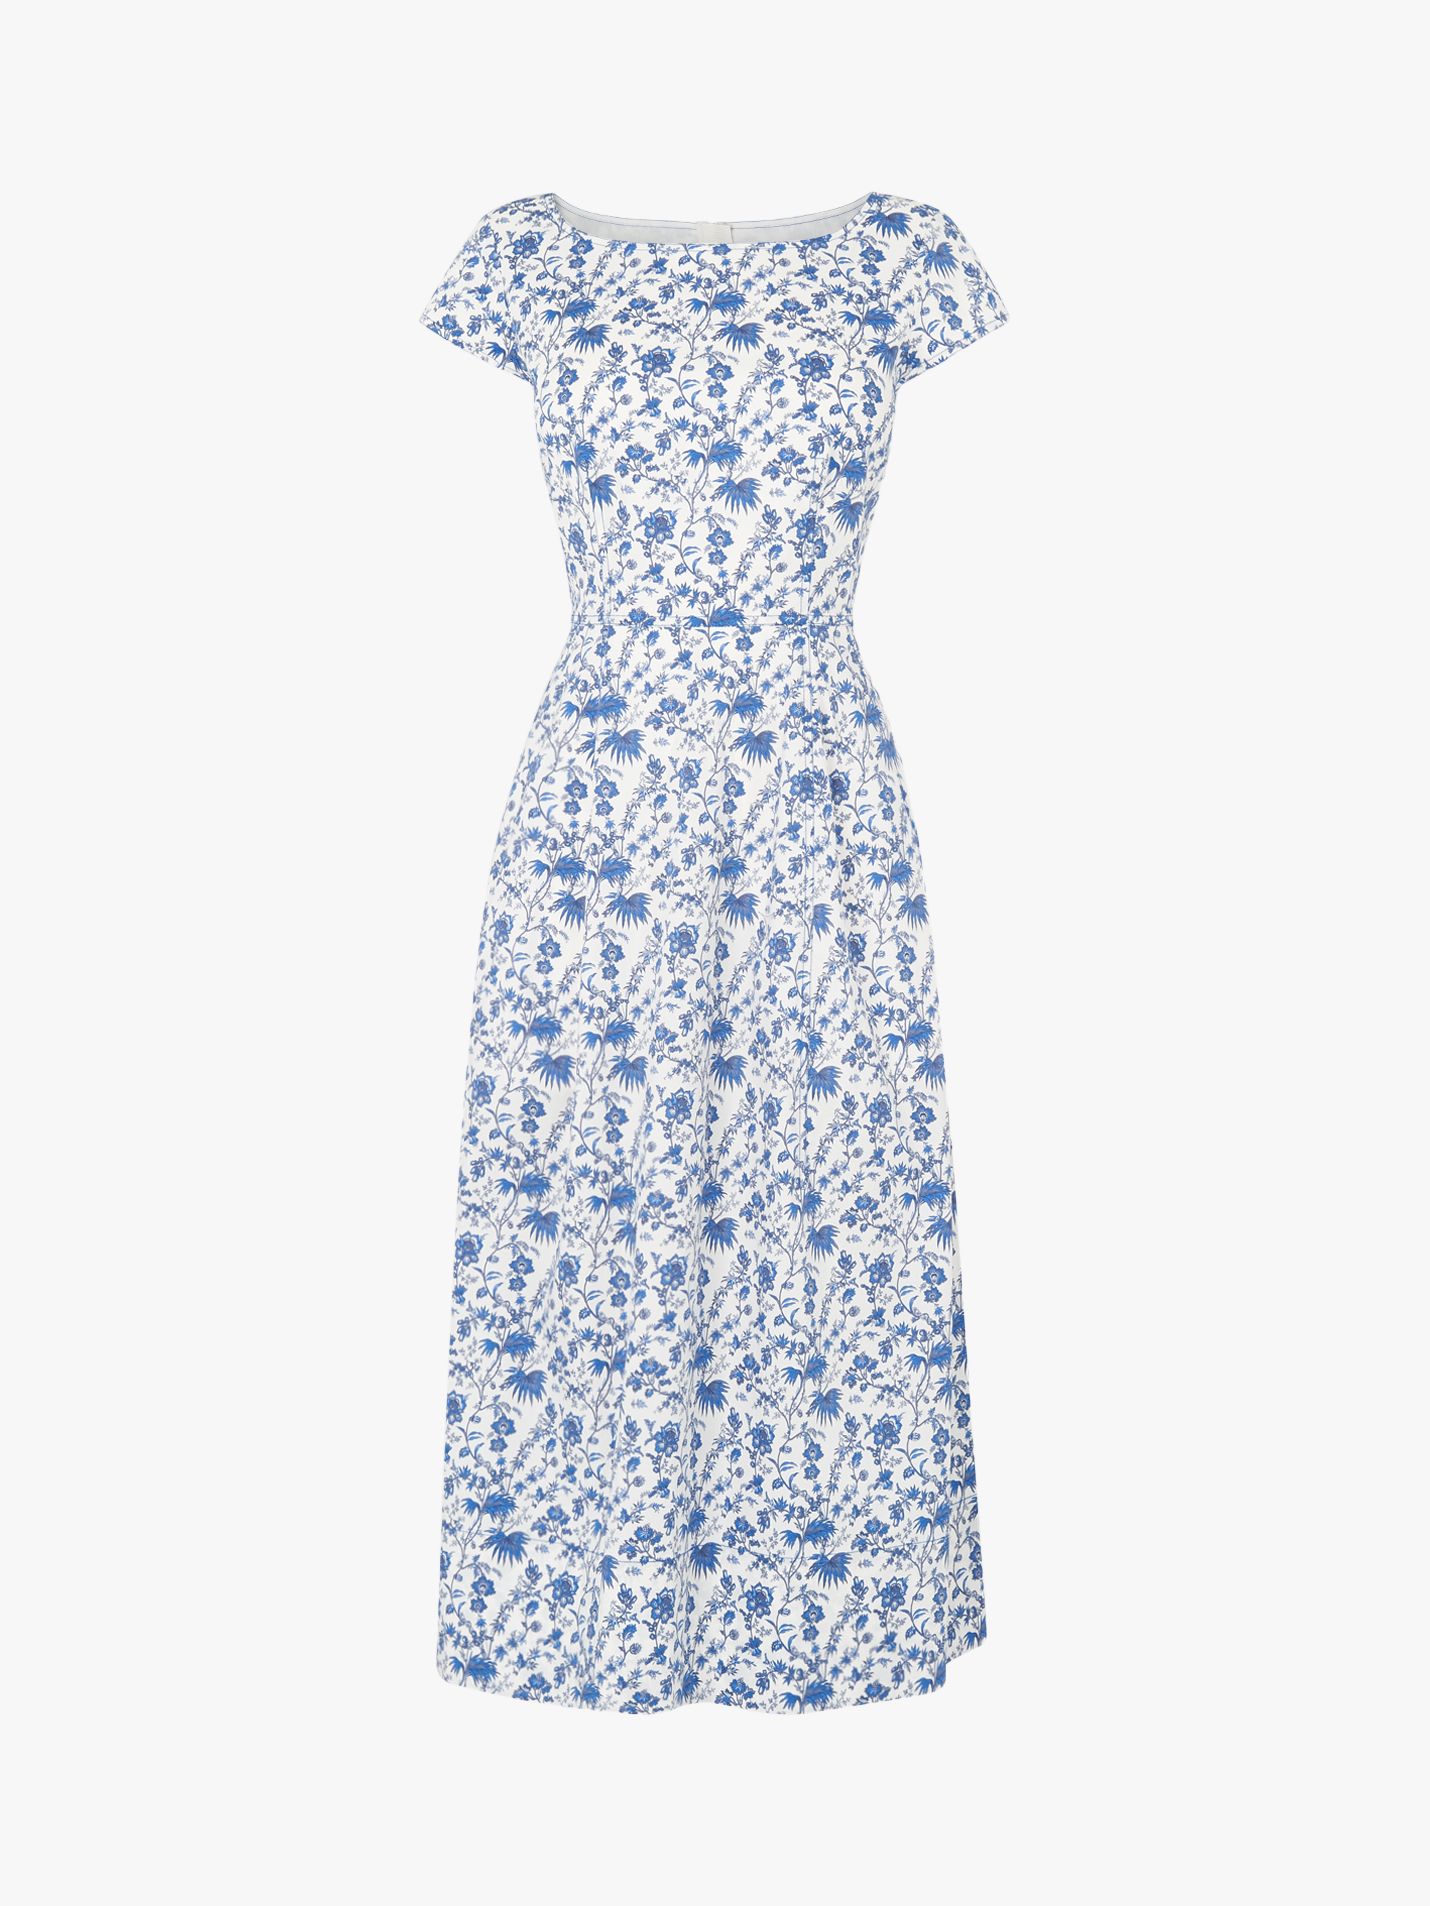 L.K.Bennett Glenda Fifties Tea Dress, Blue/Multi